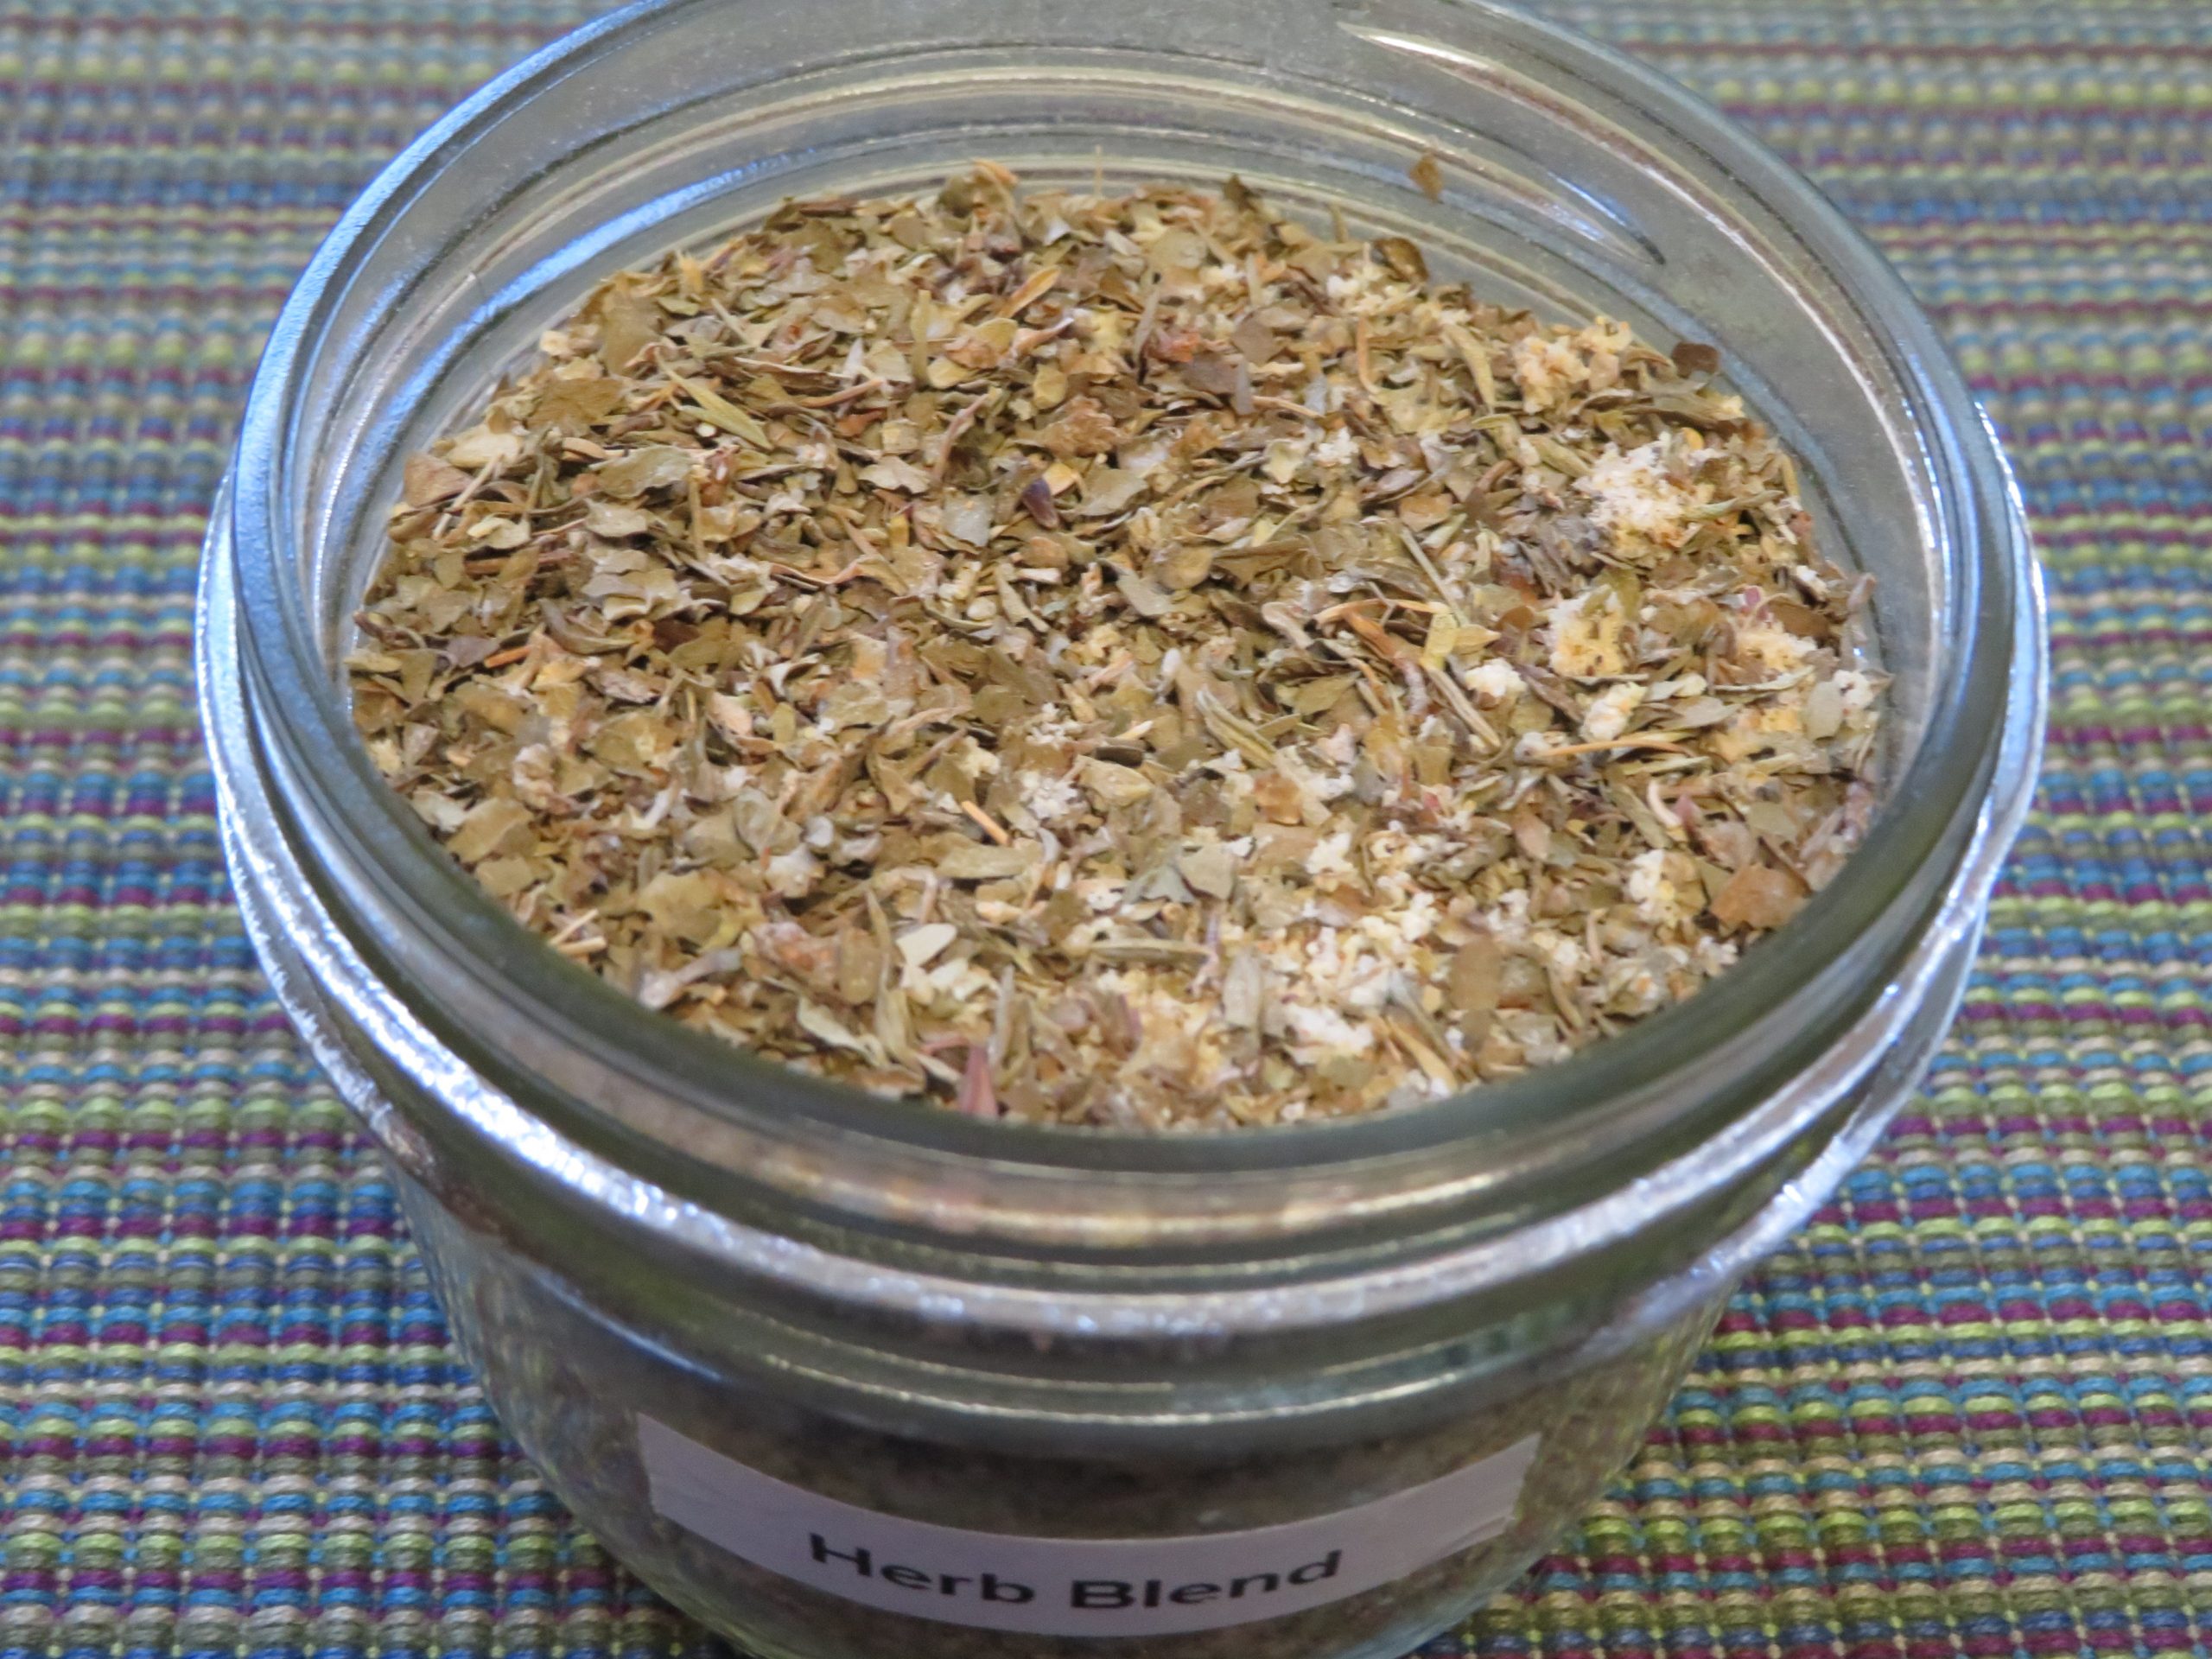 Herb Blend in an open jar